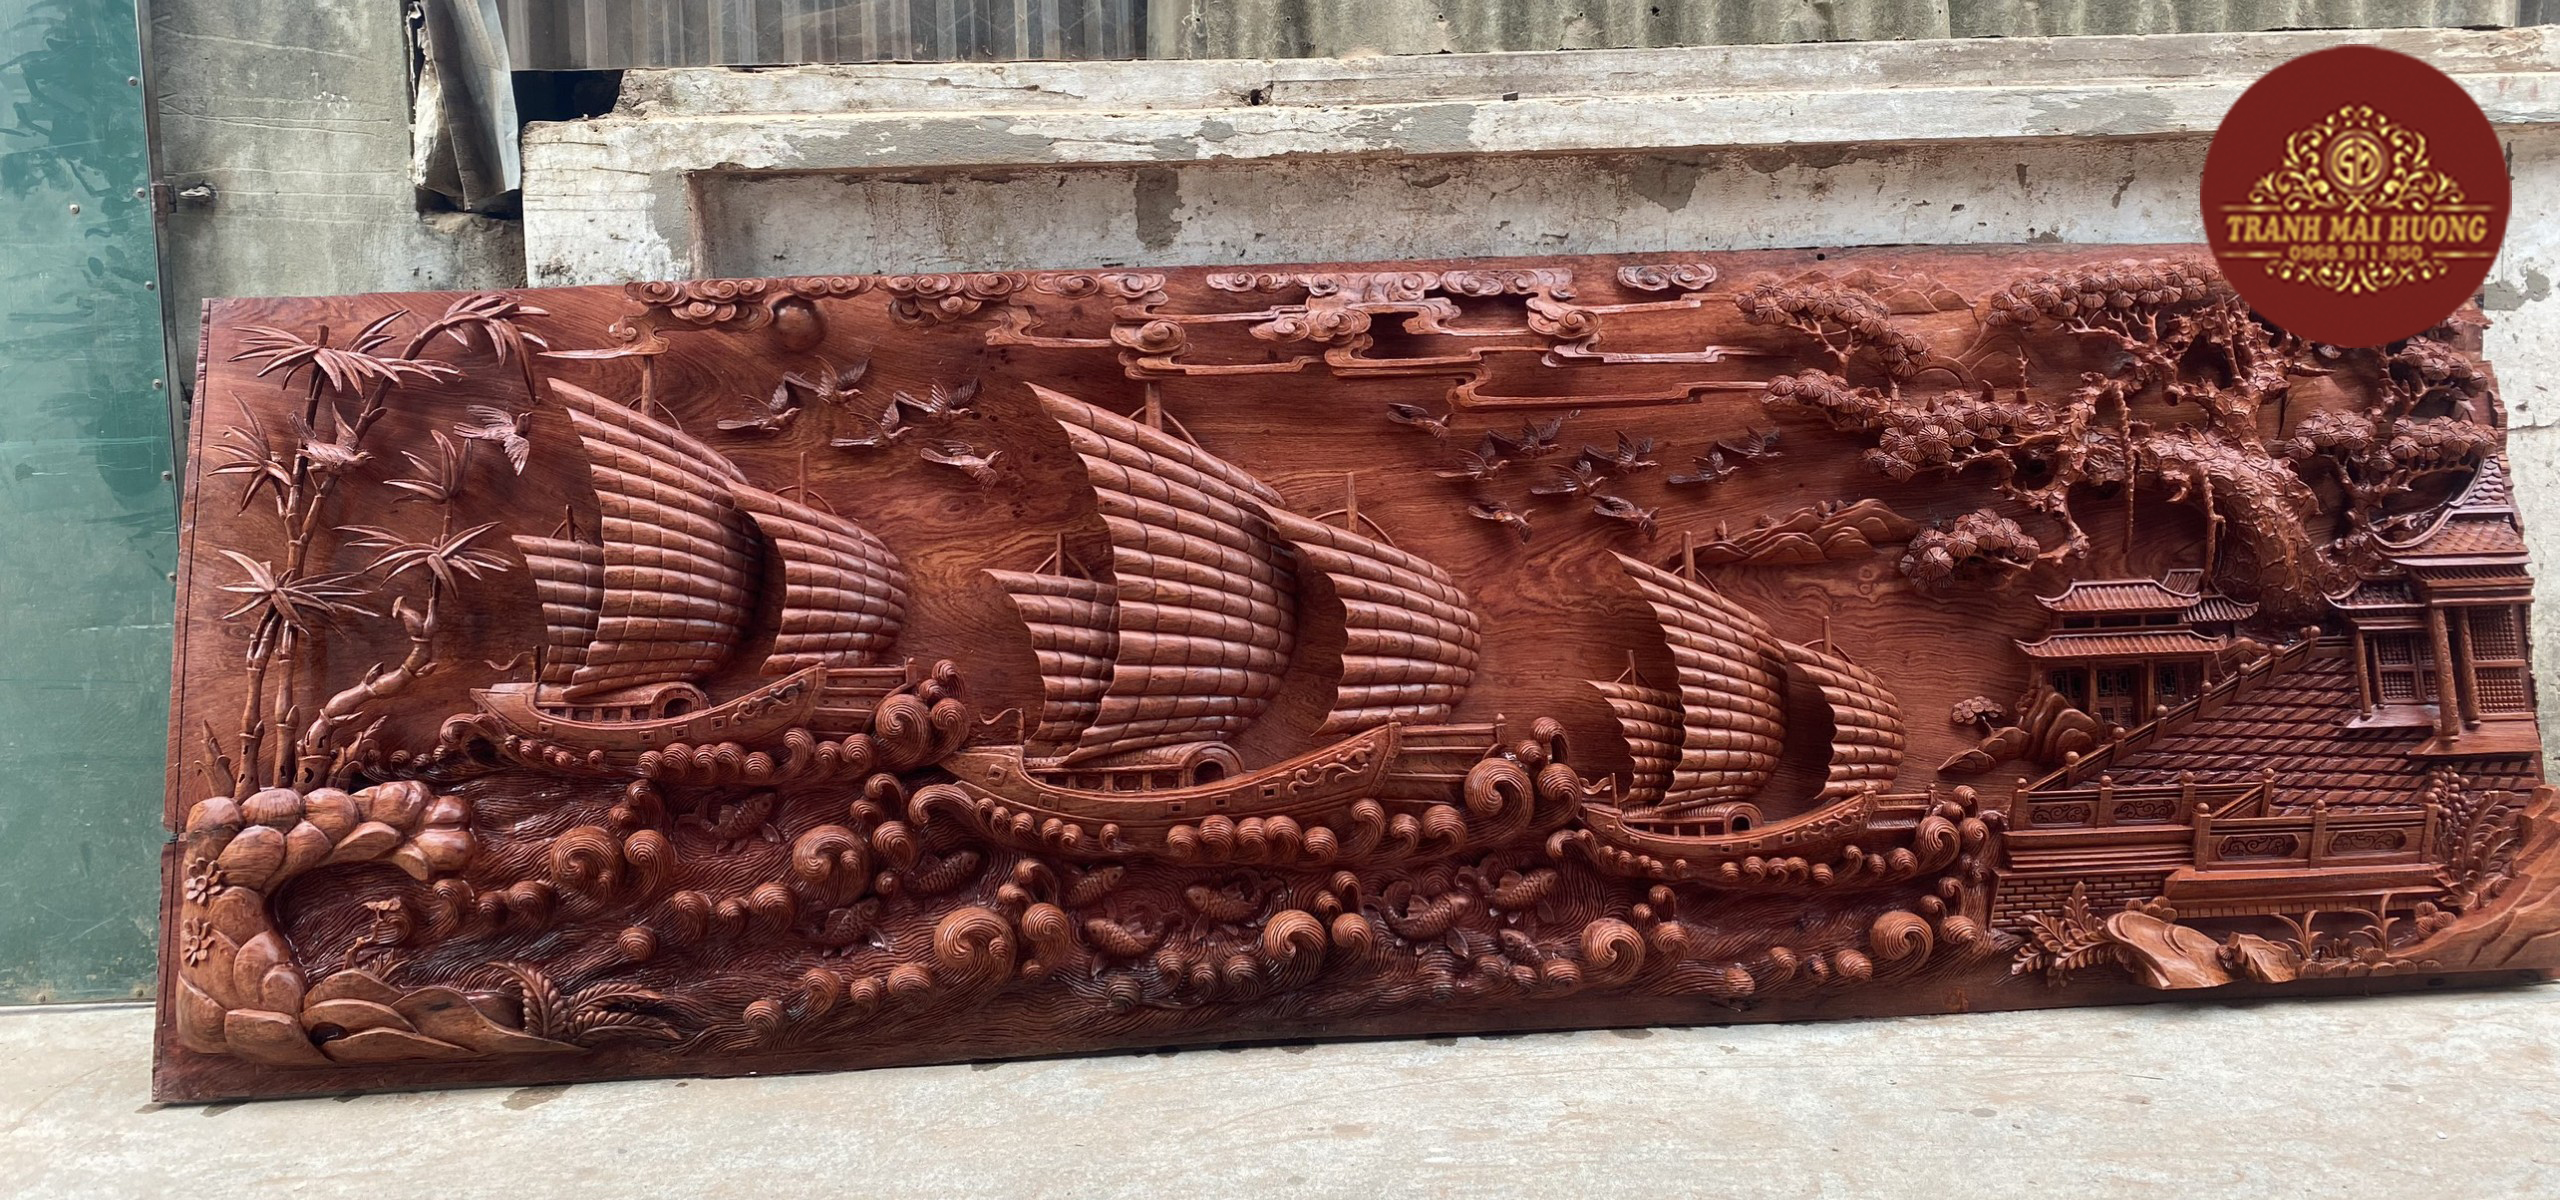 Siêu tranh gỗ hương đá thuận buồm xuôi gió đục kênh bong cực chất.